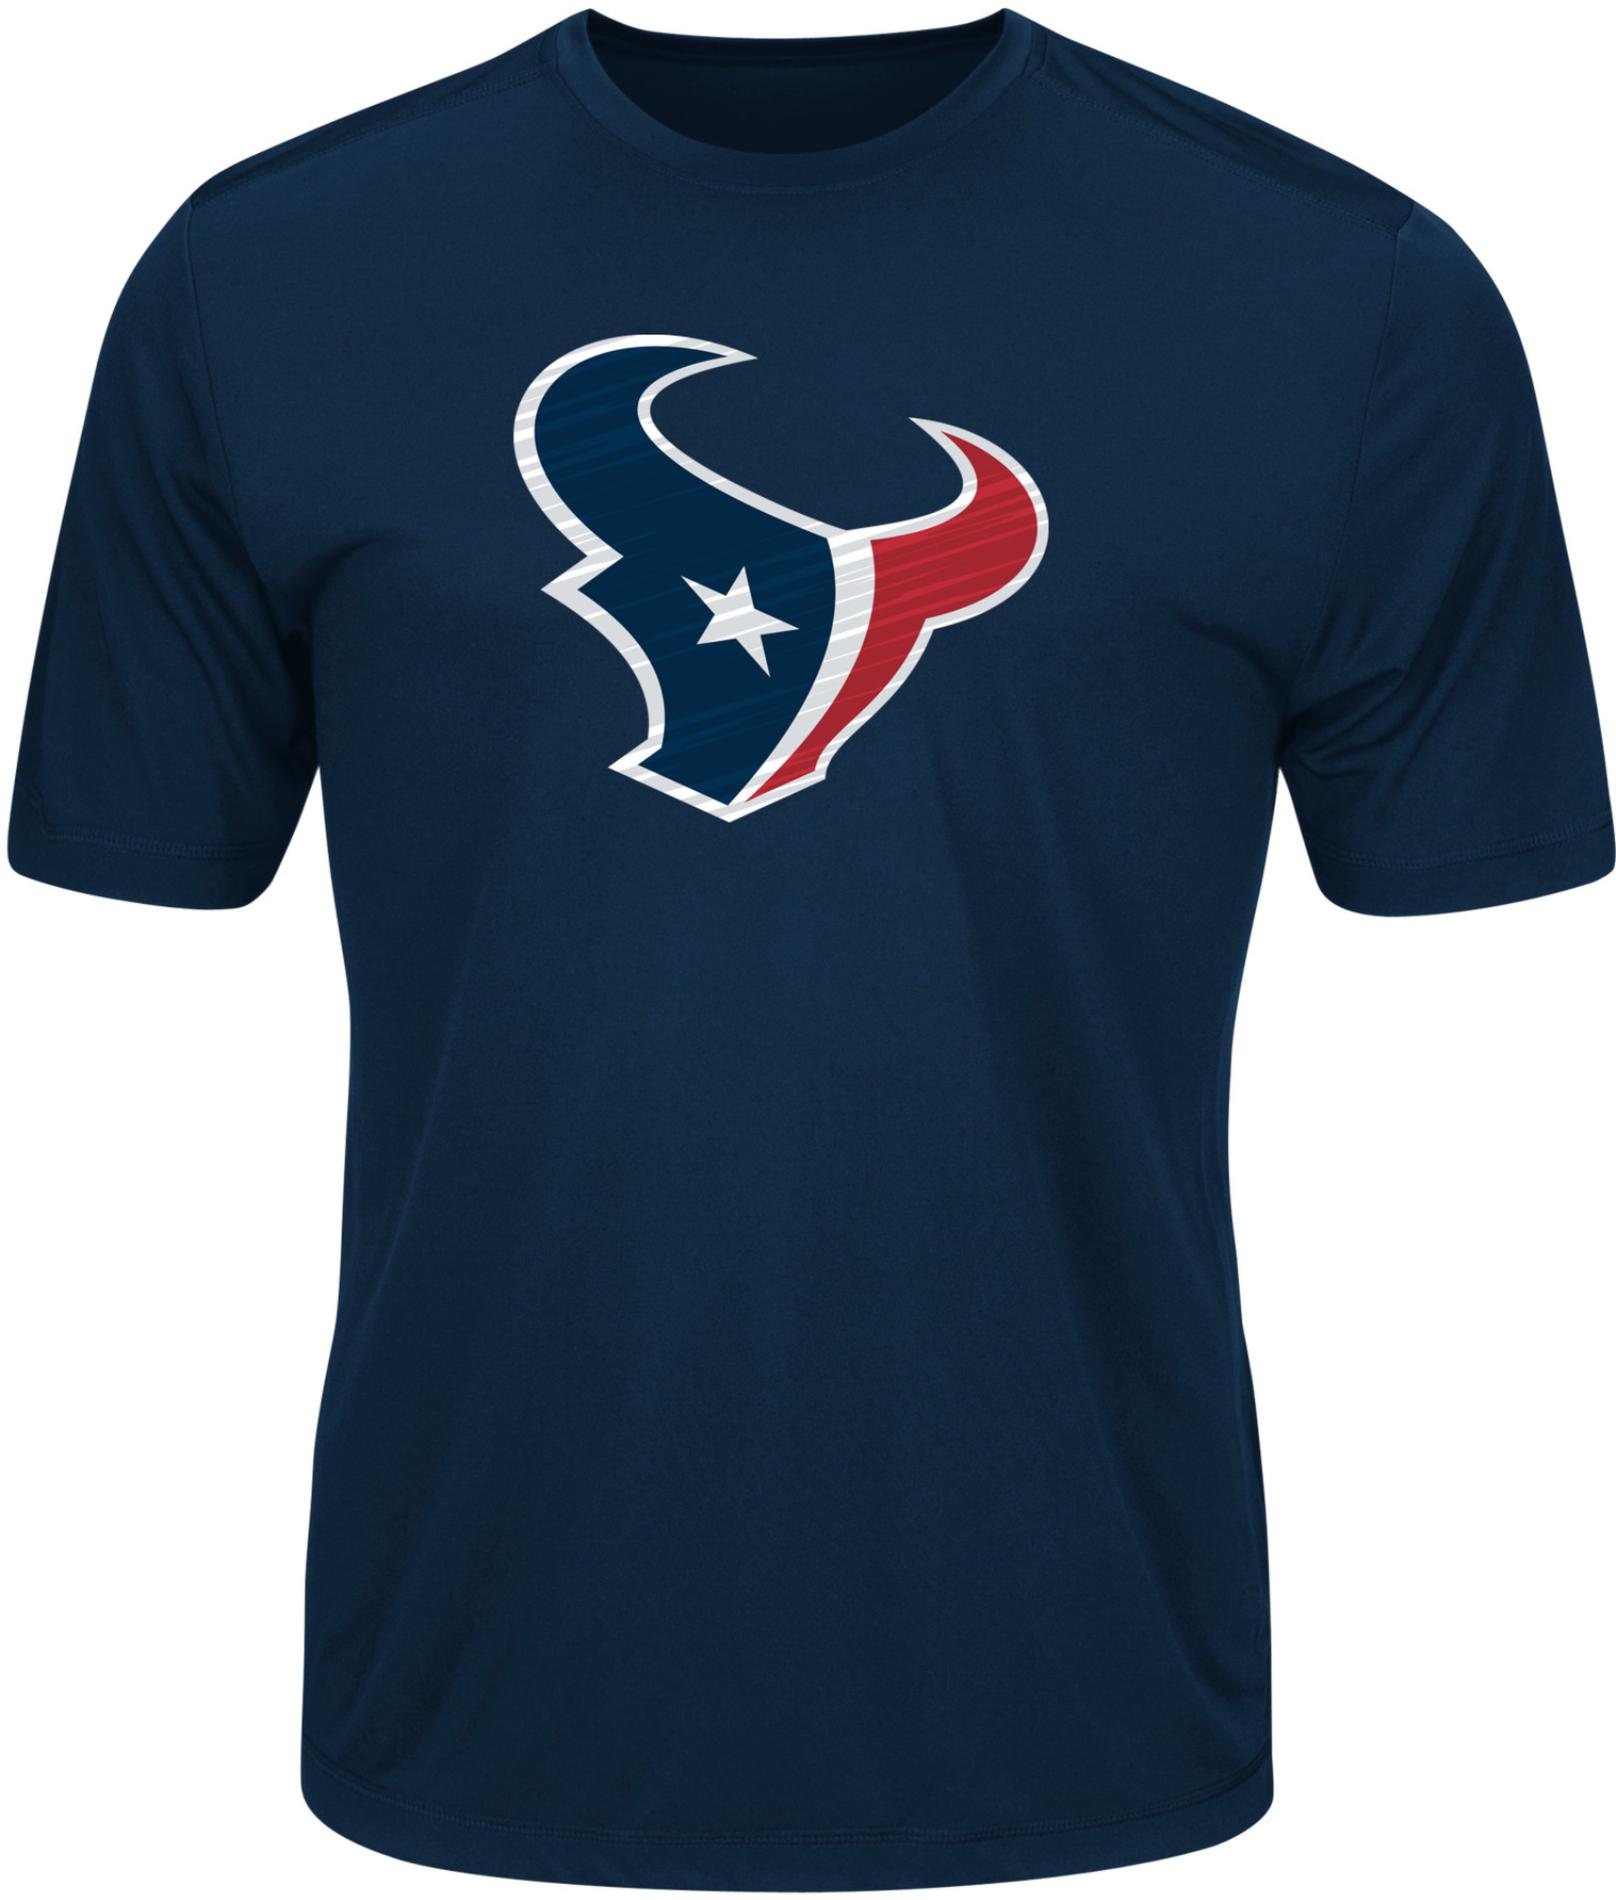 NFL Men's Graphic T-Shirt - Houston Texans